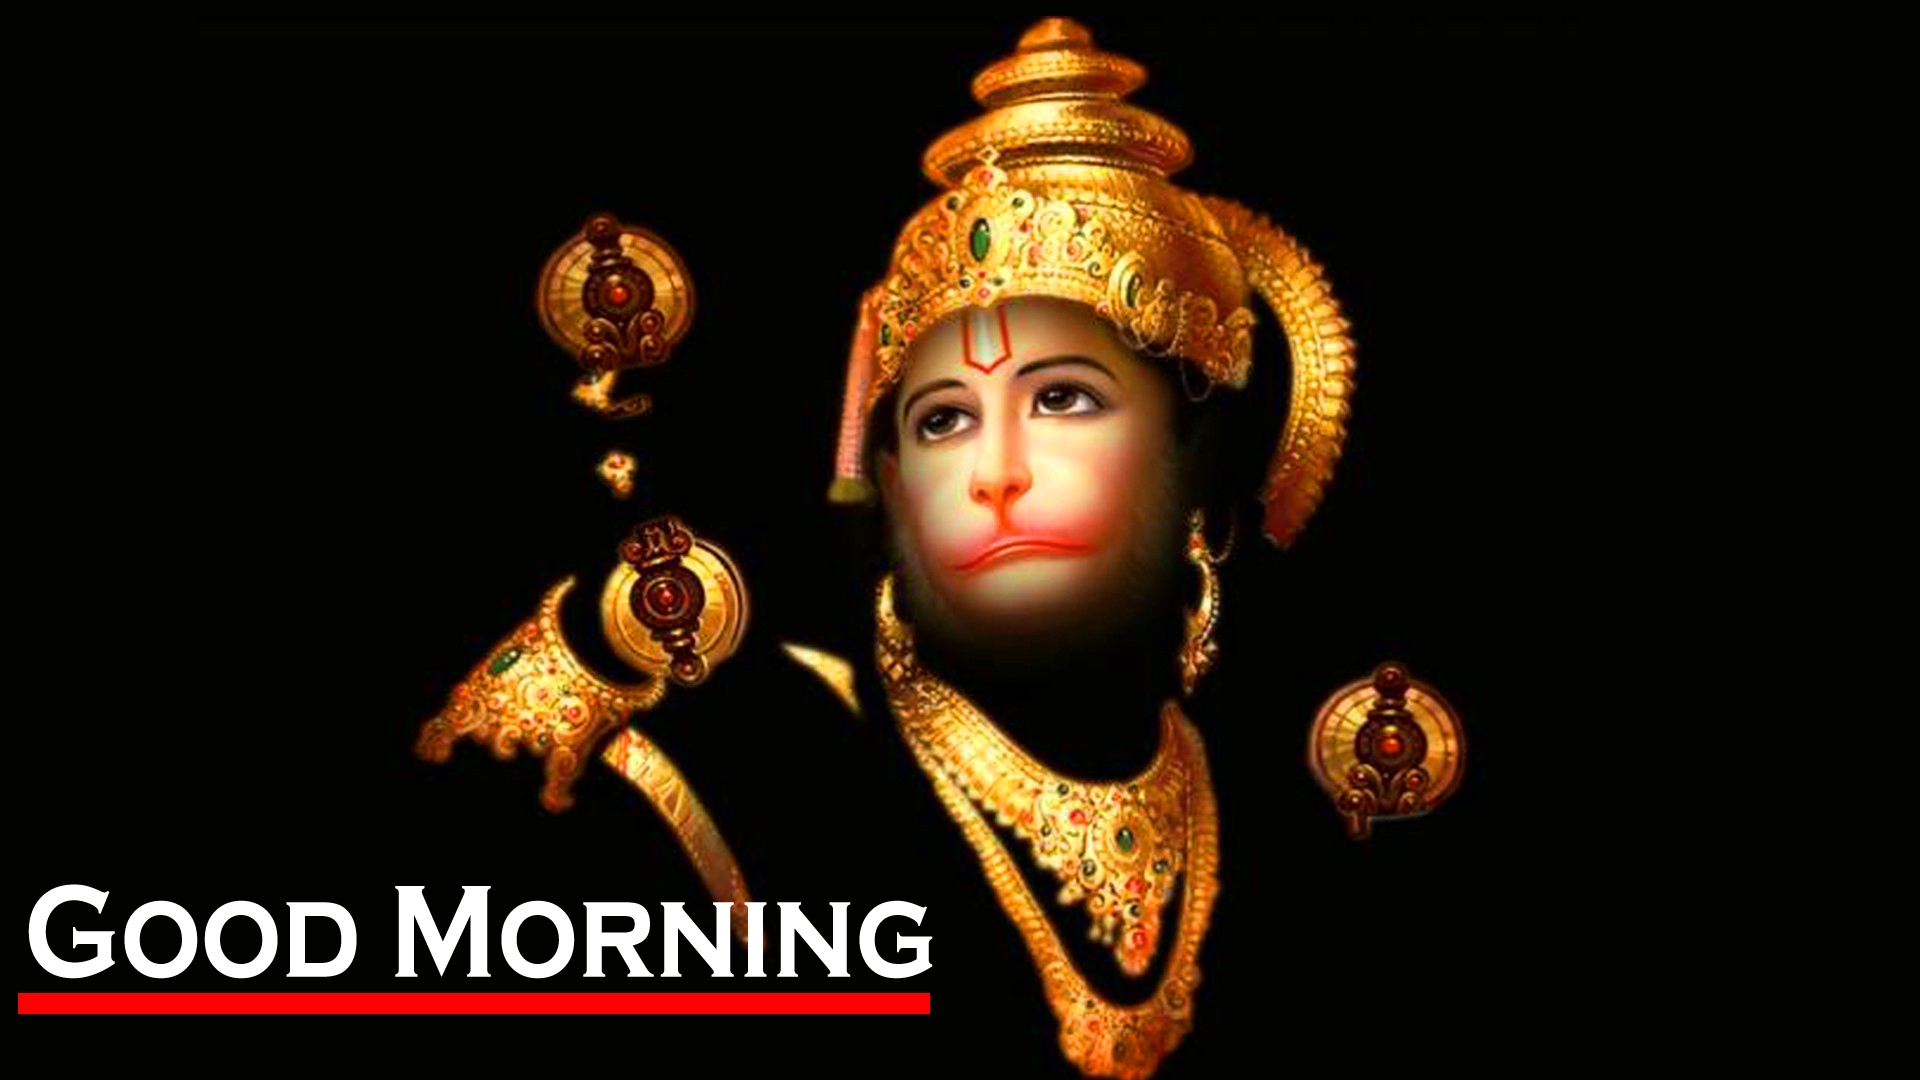 God Good Morning Images With Hanuman JI